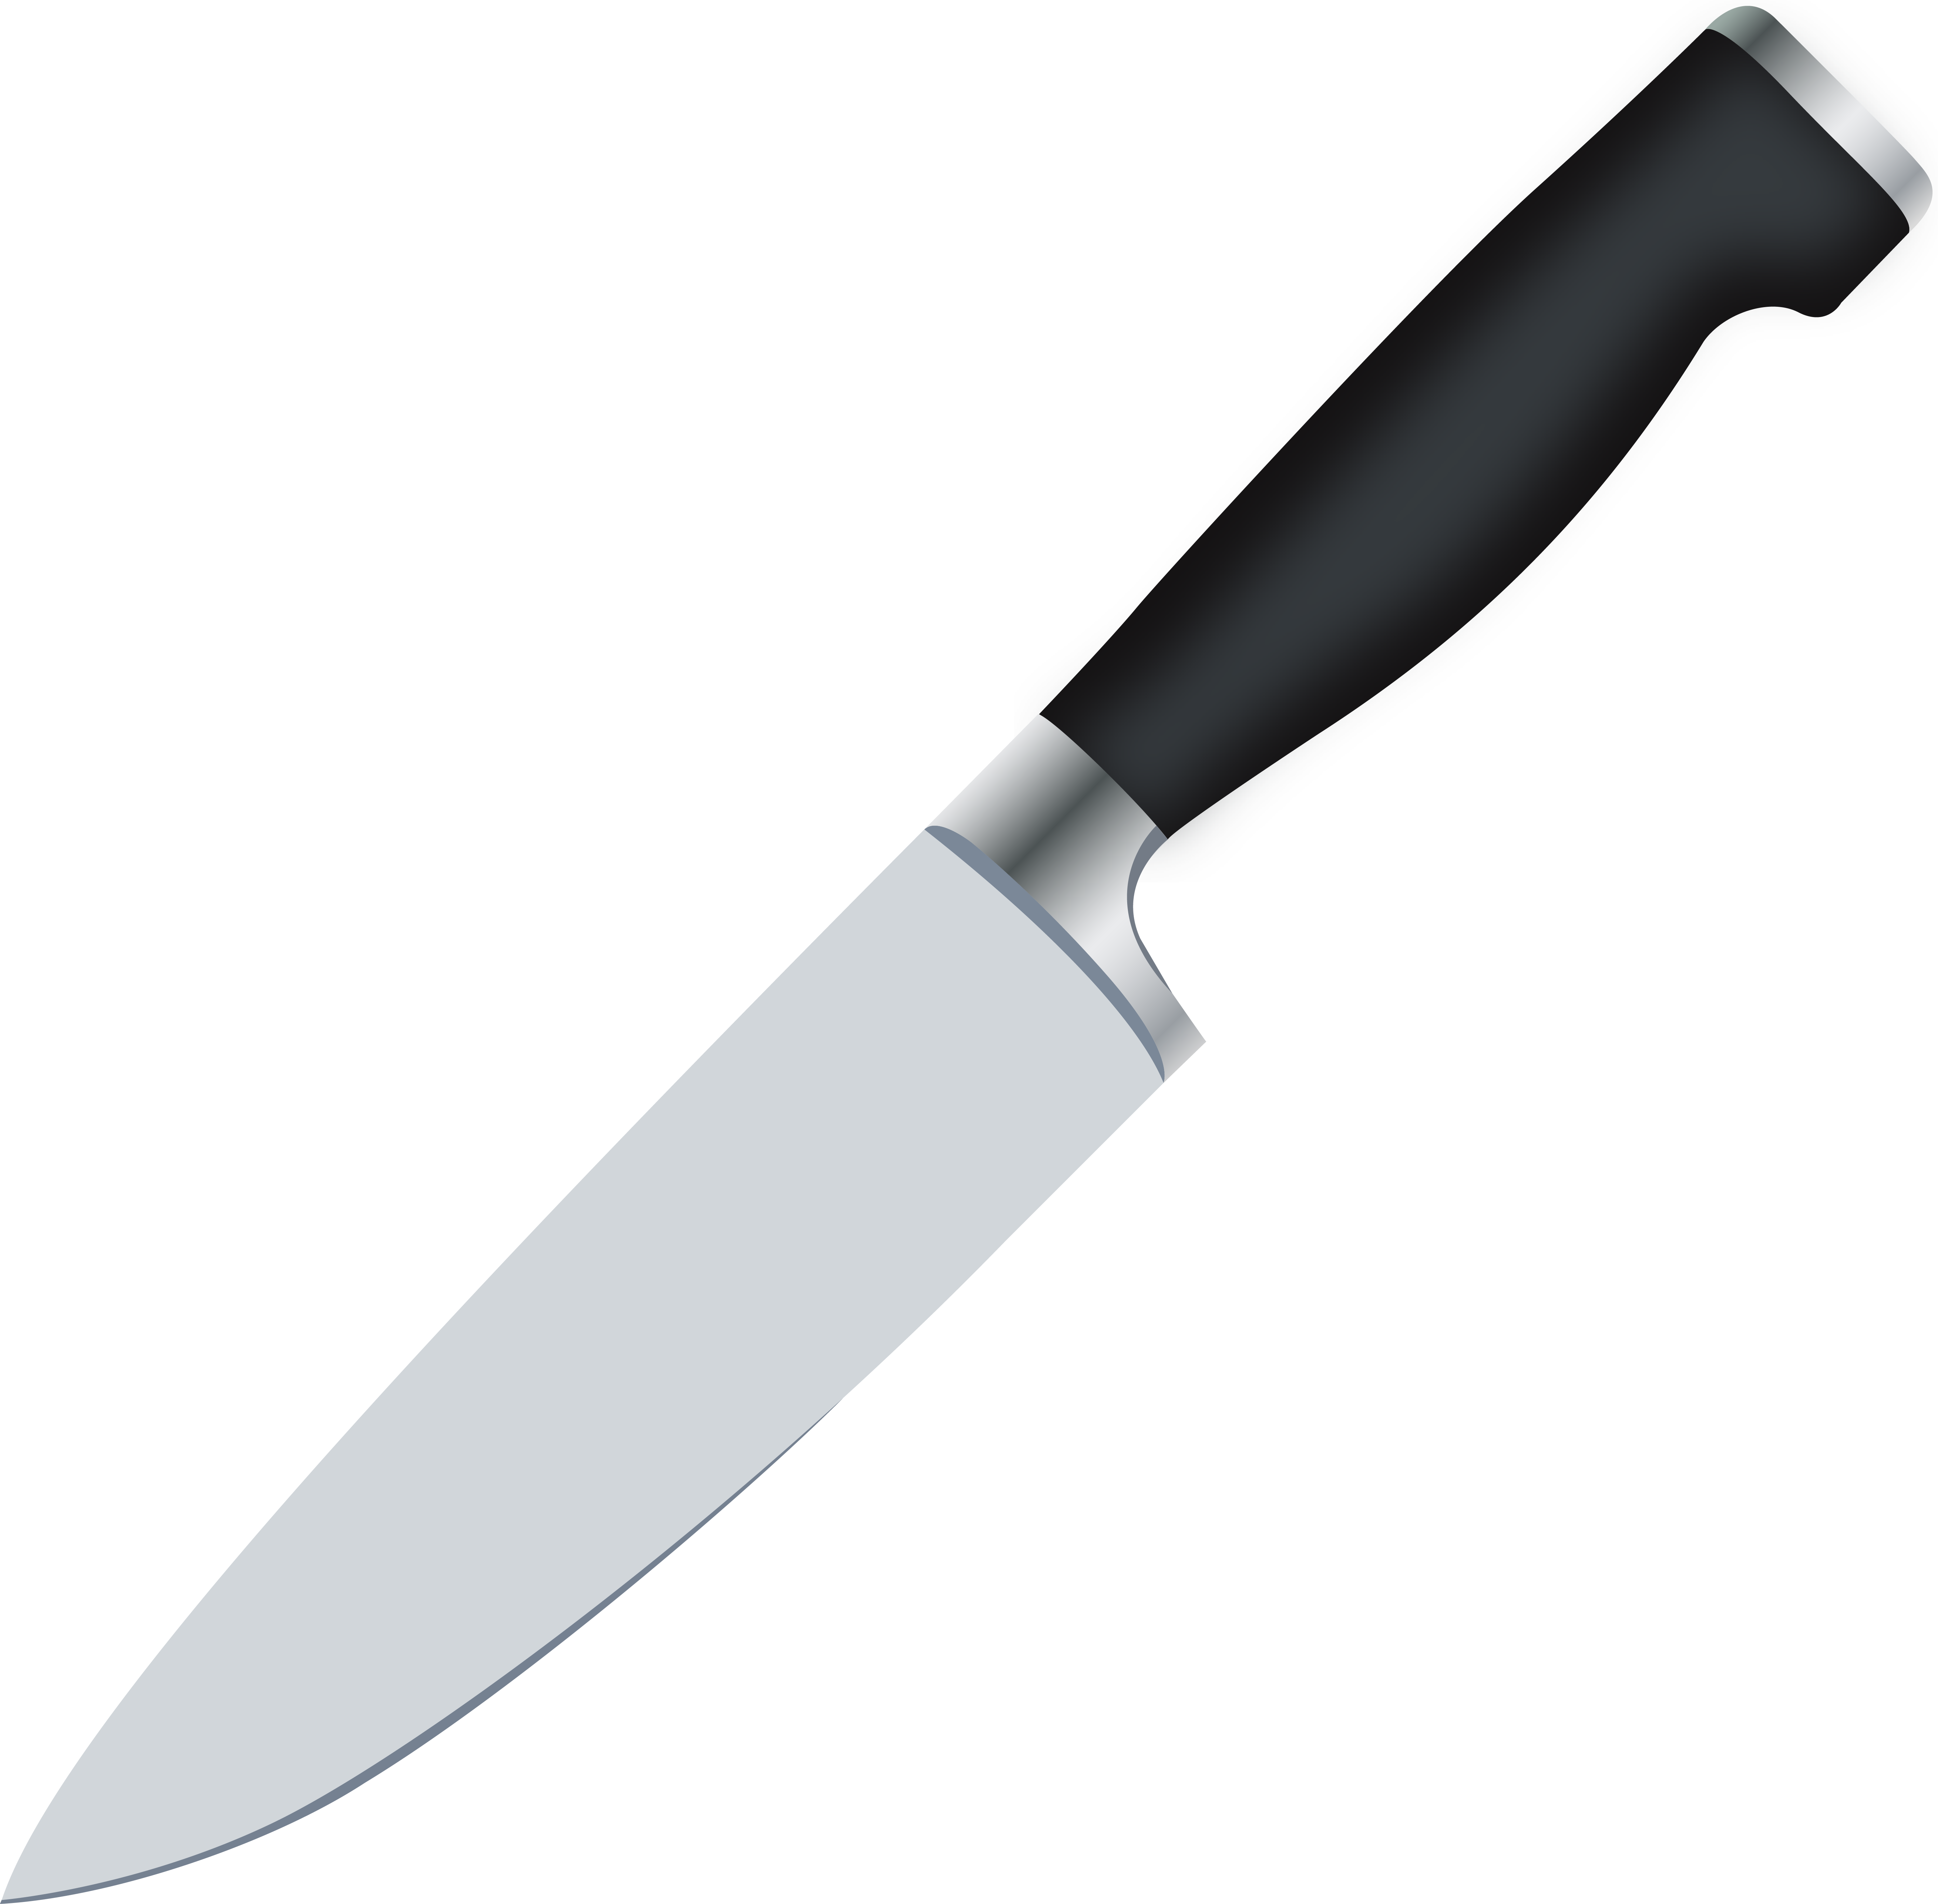 Dagger knife attack